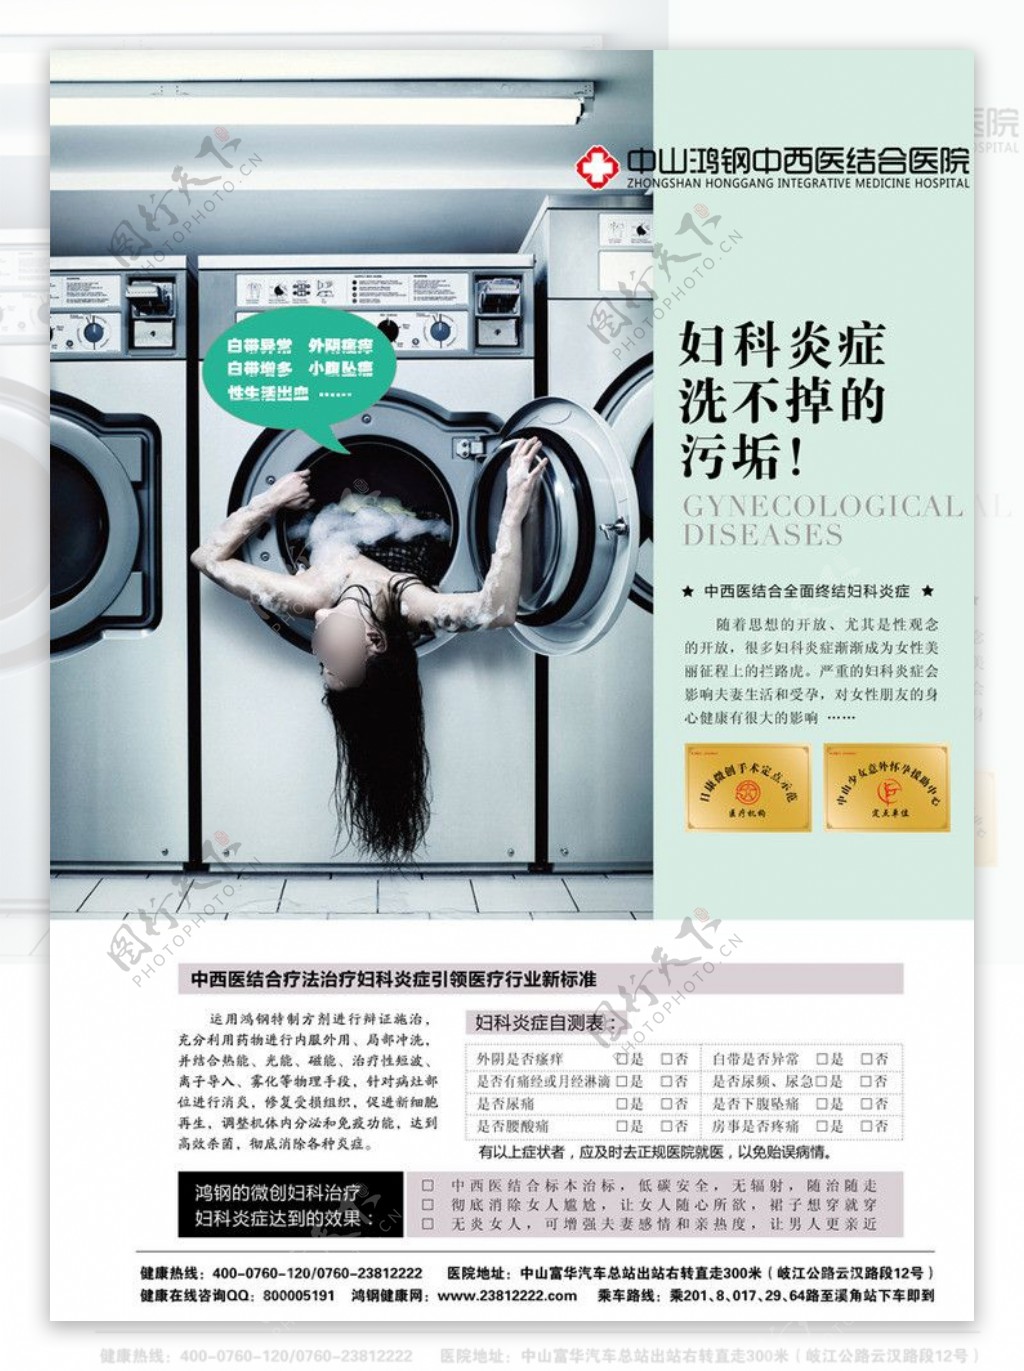 洗衣机中的女人图片